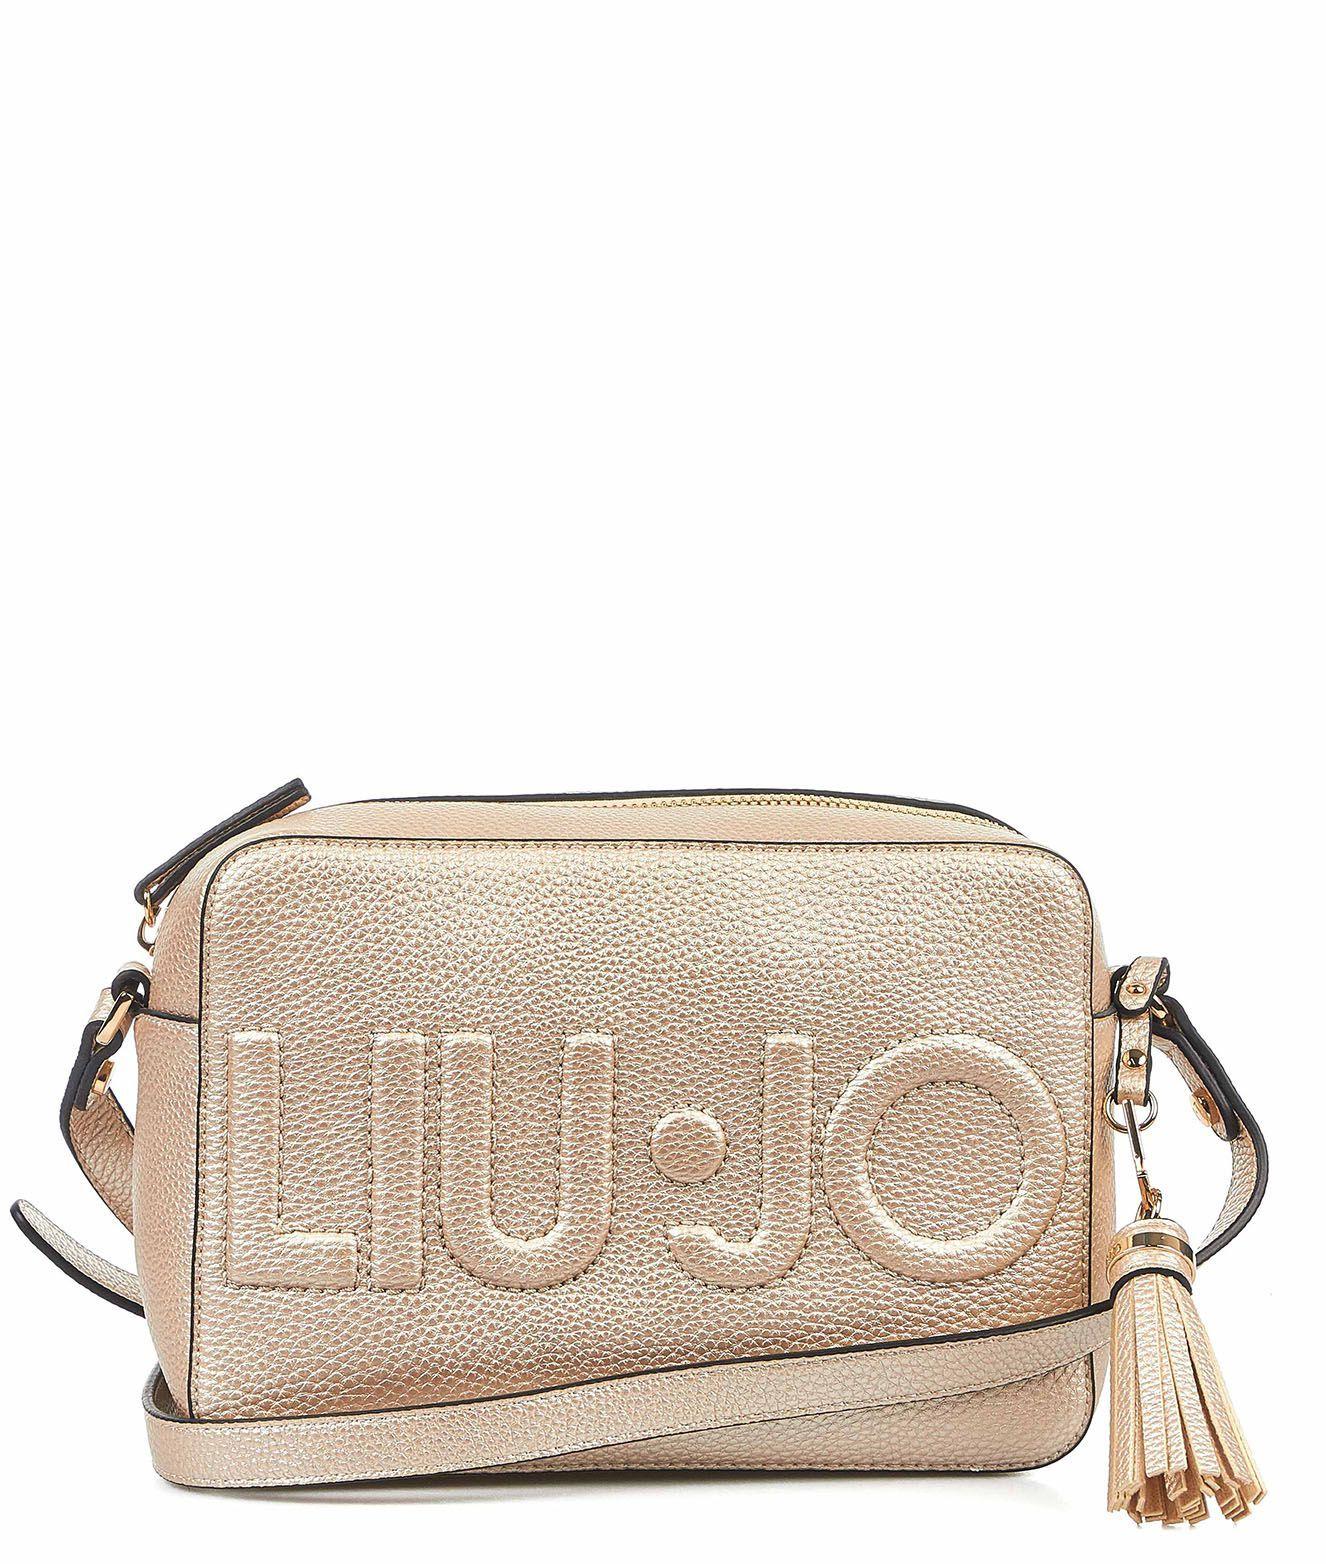 Liu Jo Af0212e008690048light Shoulder Bag in Gold (Metallic) - Lyst